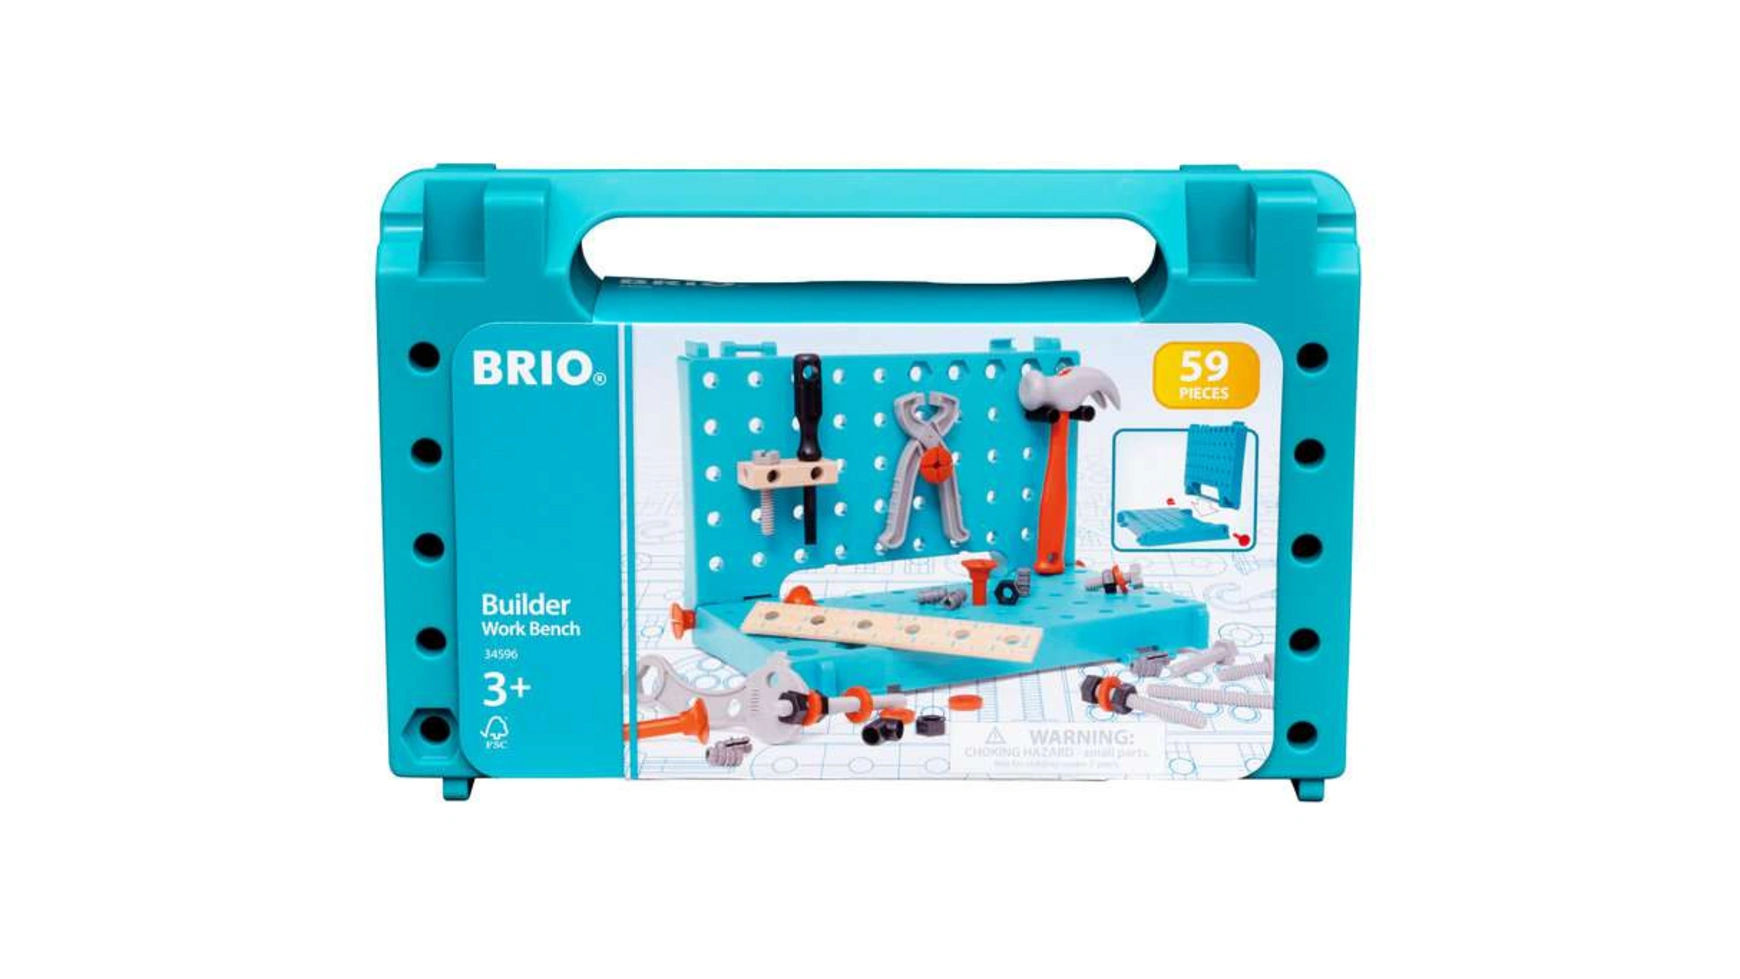 Brio Builder Корпус верстака идеальный набор начального уровня для маленьких мастеров